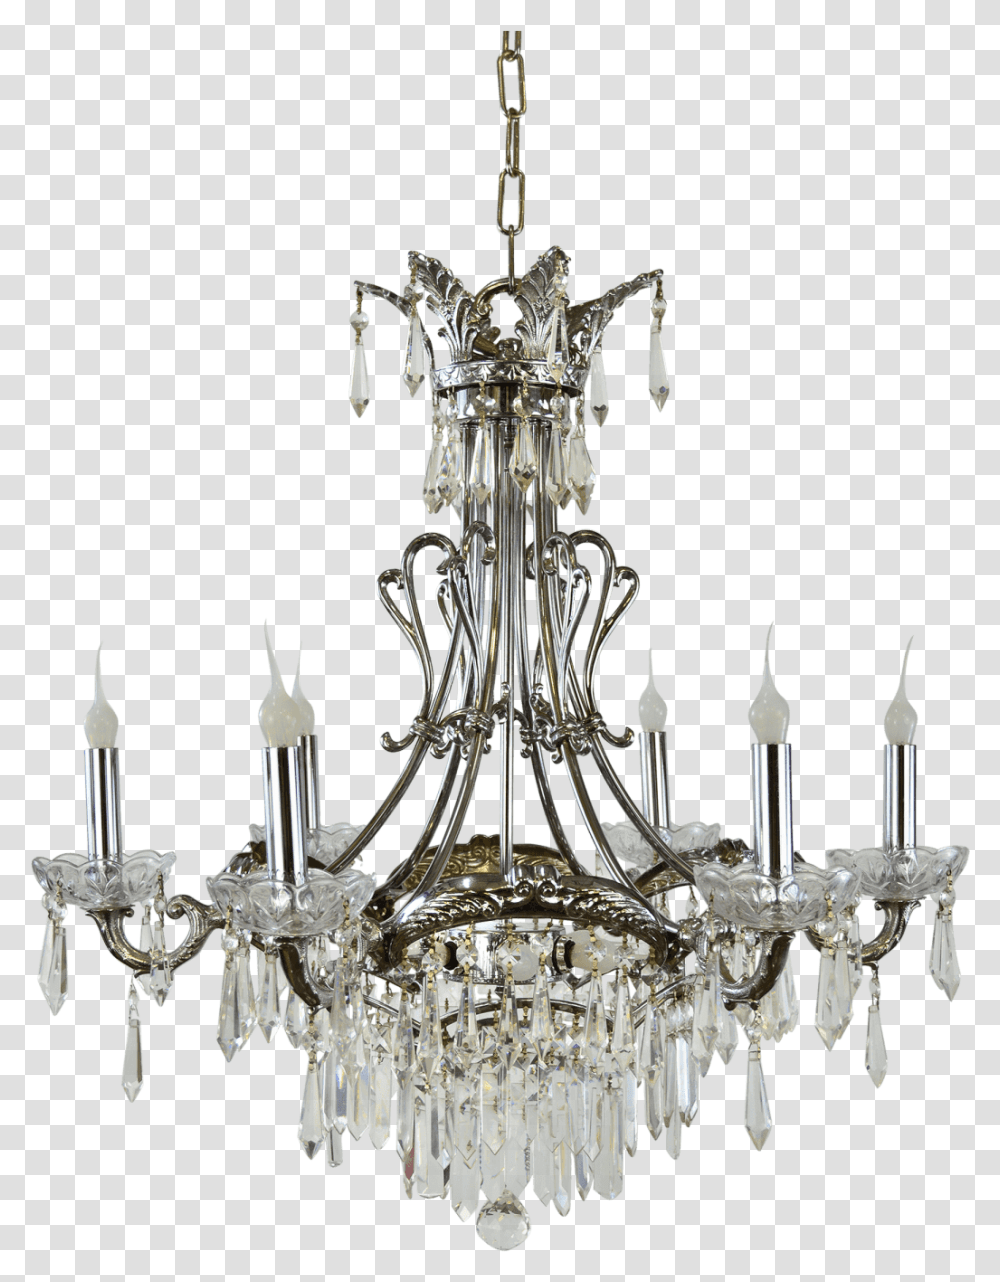 Vintage Chandelier Background Chandelier, Lamp, Crystal Transparent Png